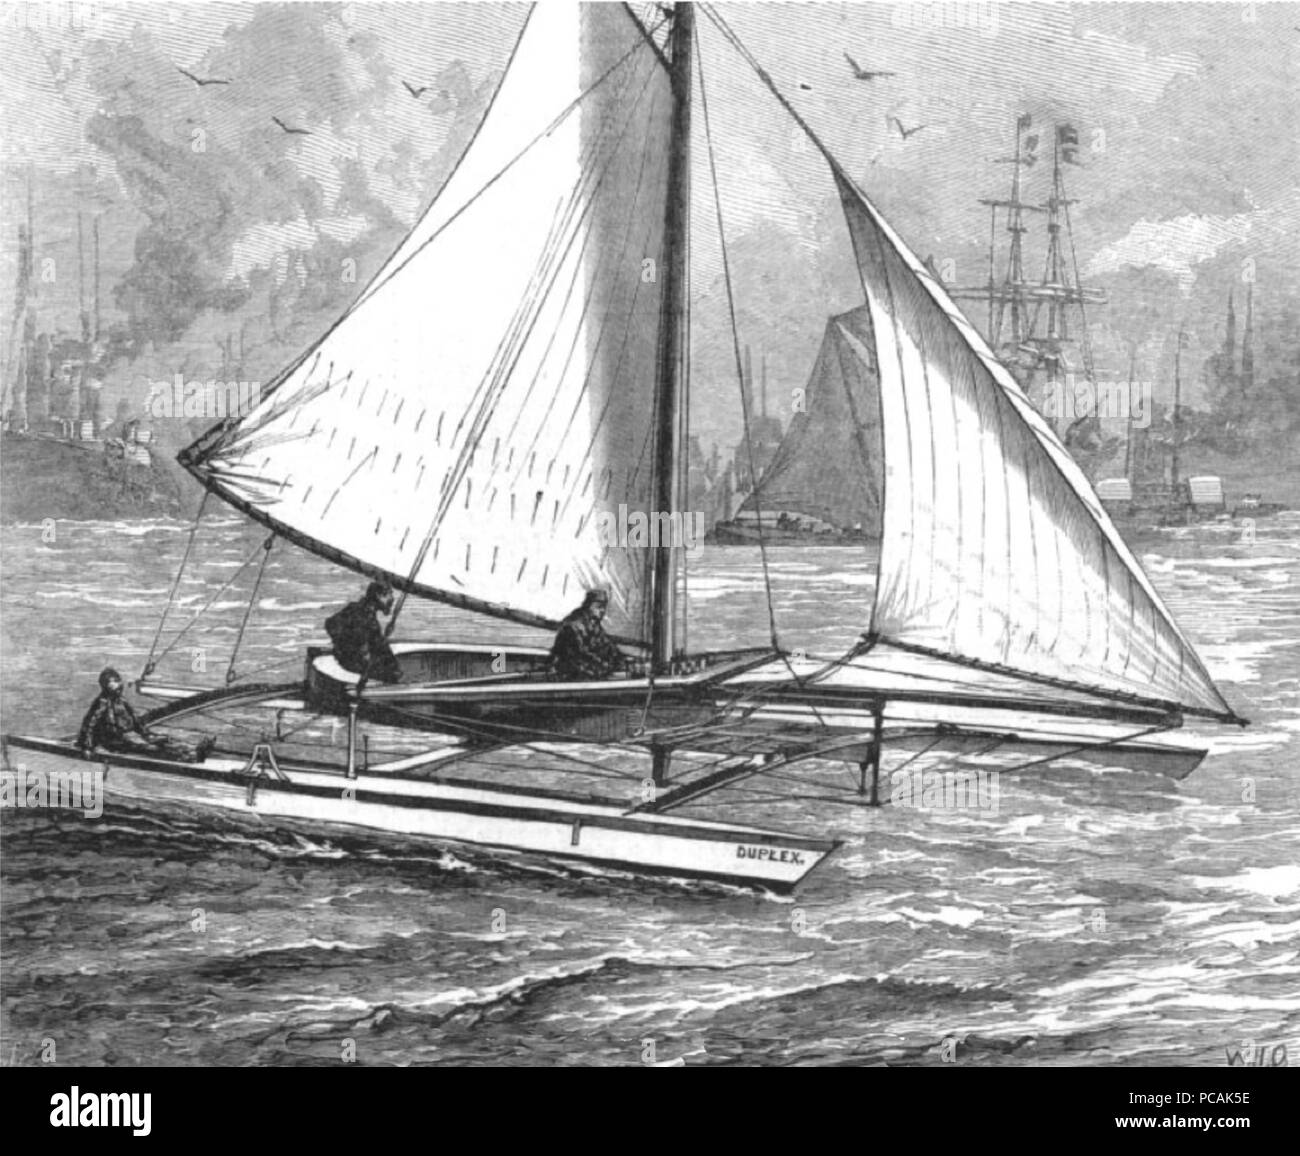 25 Herreshoff Duplex catamarán en el Thames River--1880 Foto de stock